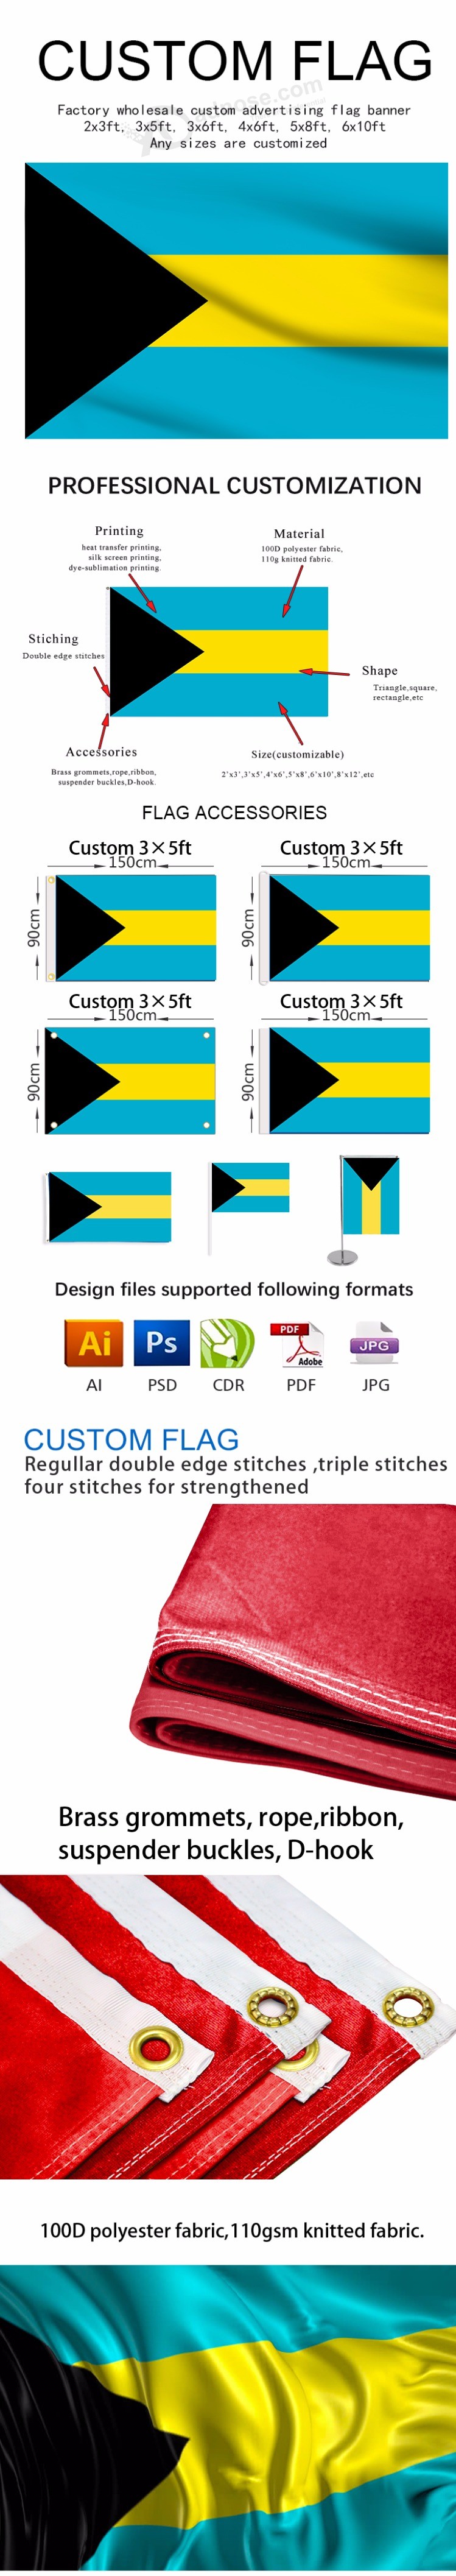 Vlag van satijn met super kwaliteit satijnen stof print in Bahama's